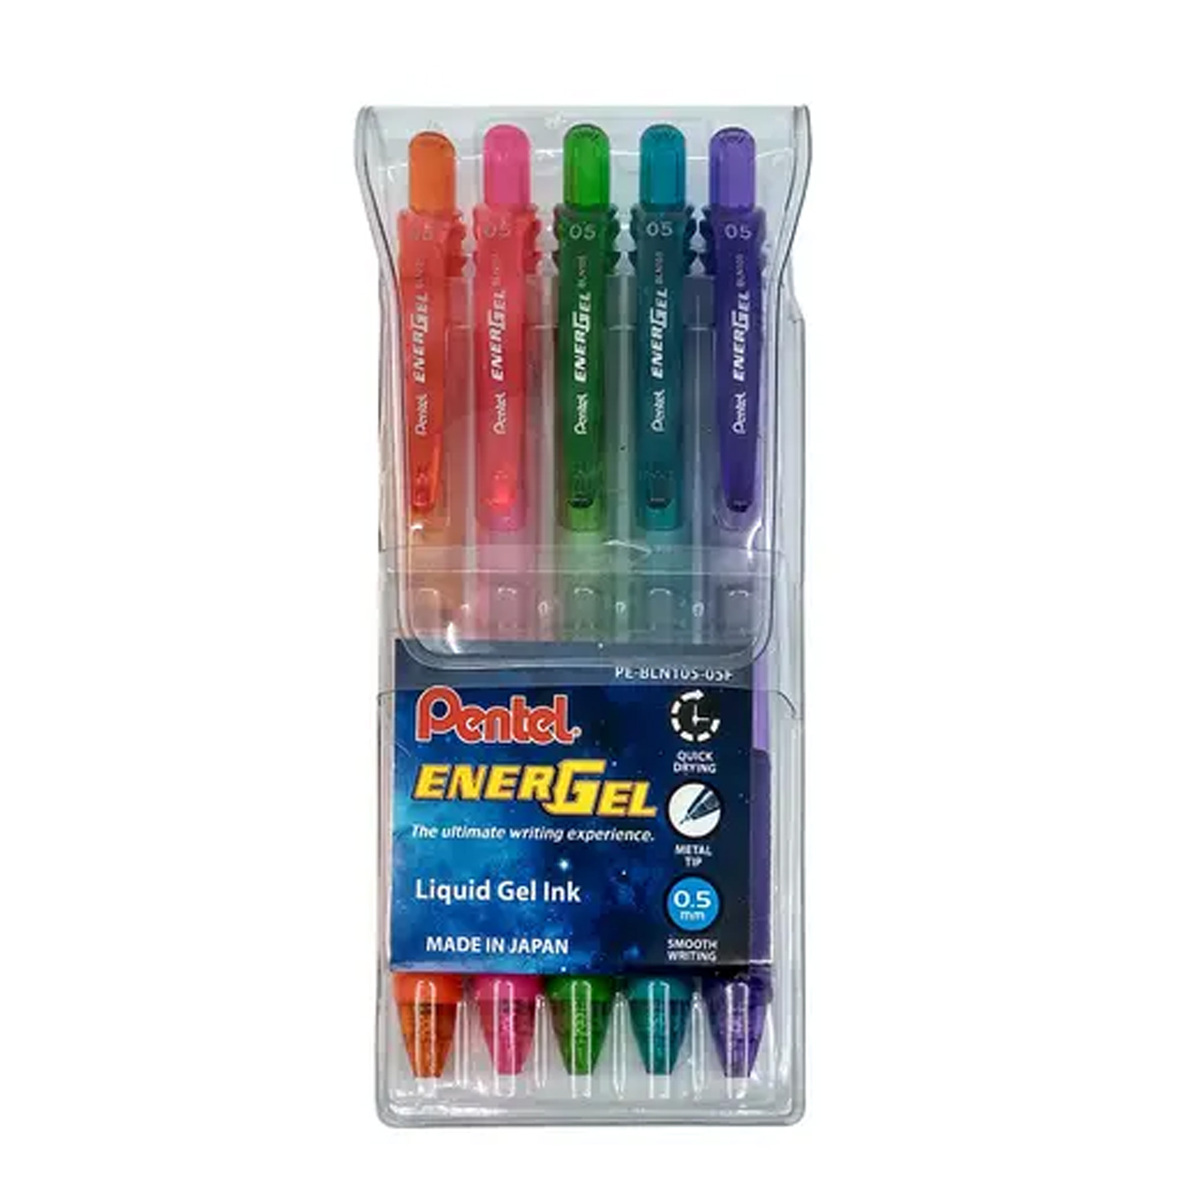 بنتل إنيرجيل-إكس 0.5 مم مجموعة أقلام هلامية 5 قطع متعددة الألوان، PE-BLN105-05F